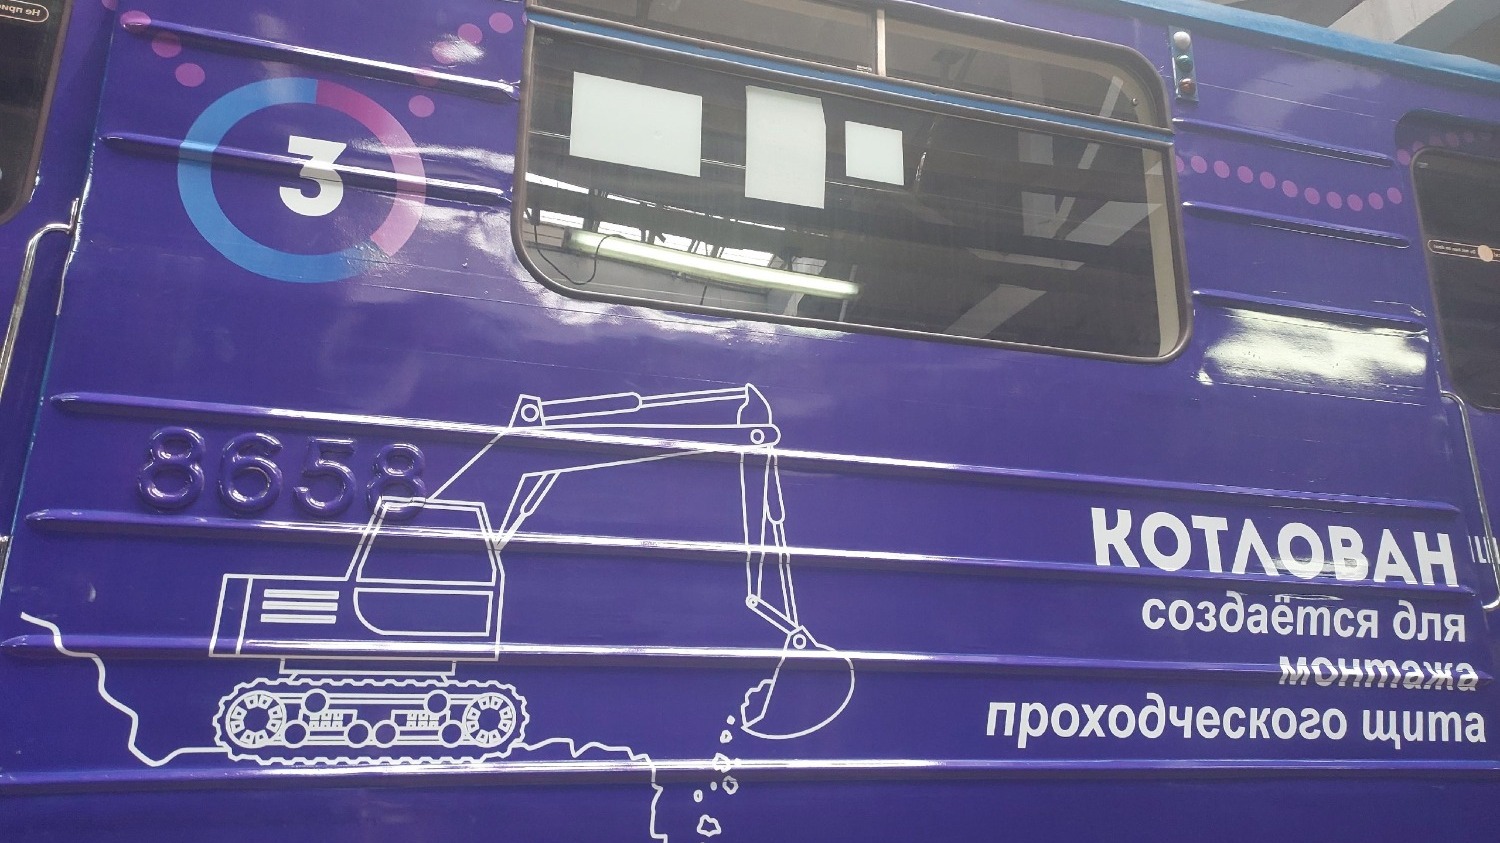 "Вагон историй" в метро Нижнего Новгорода